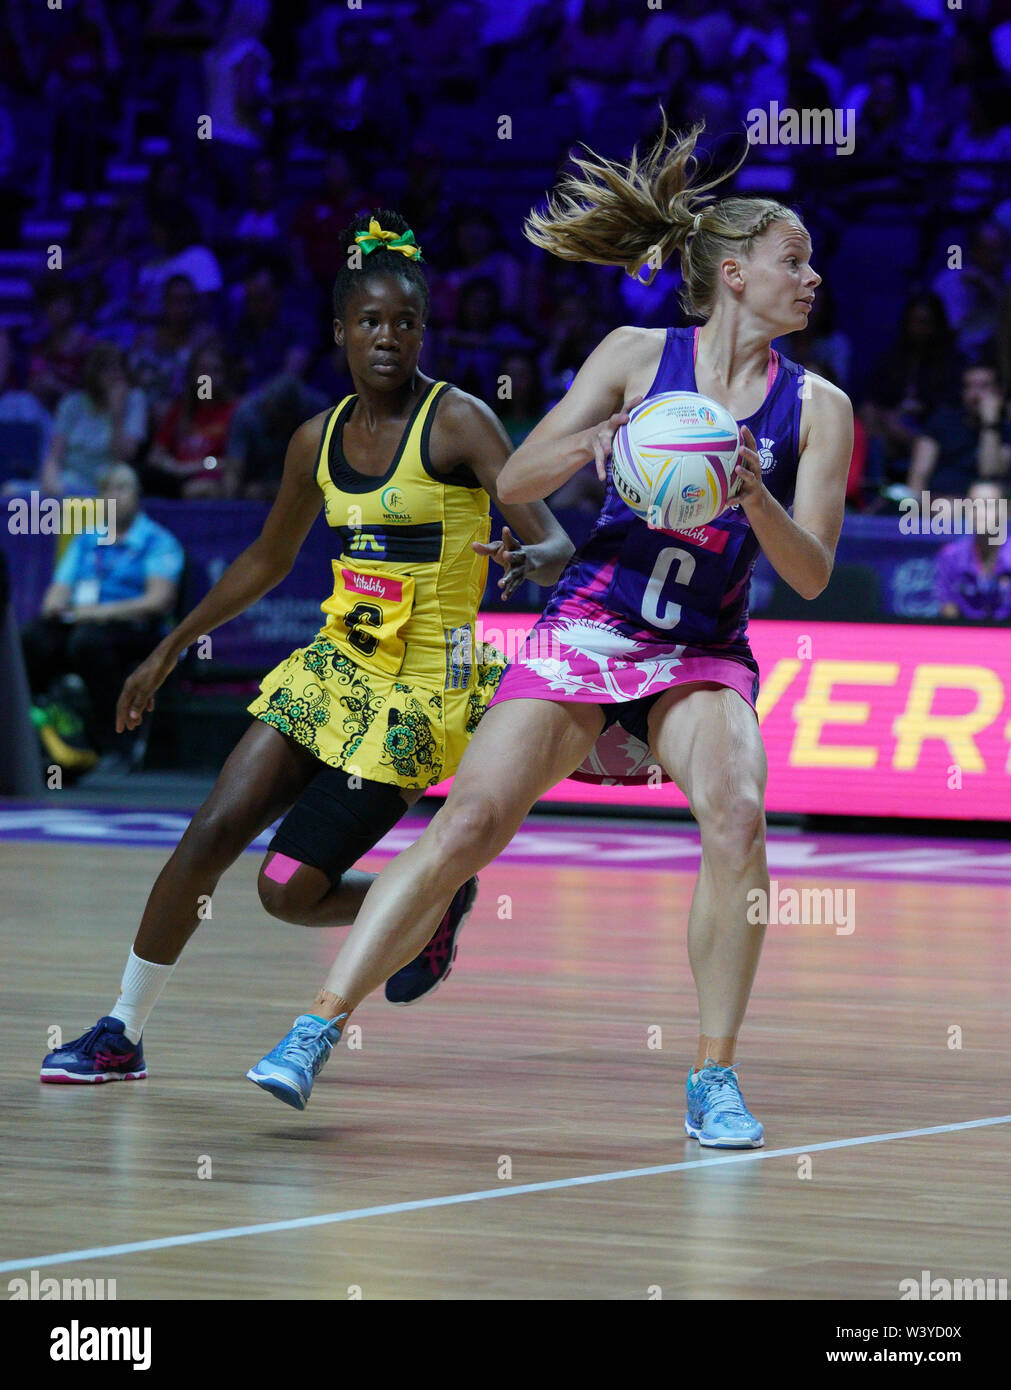 Claire Maxwell (Scozia) in azione al M&S Bank Arena durante una vitalità Netball Per la Coppa del Mondo in Liverpool.Giamaica ha vinto 67-36. Foto Stock